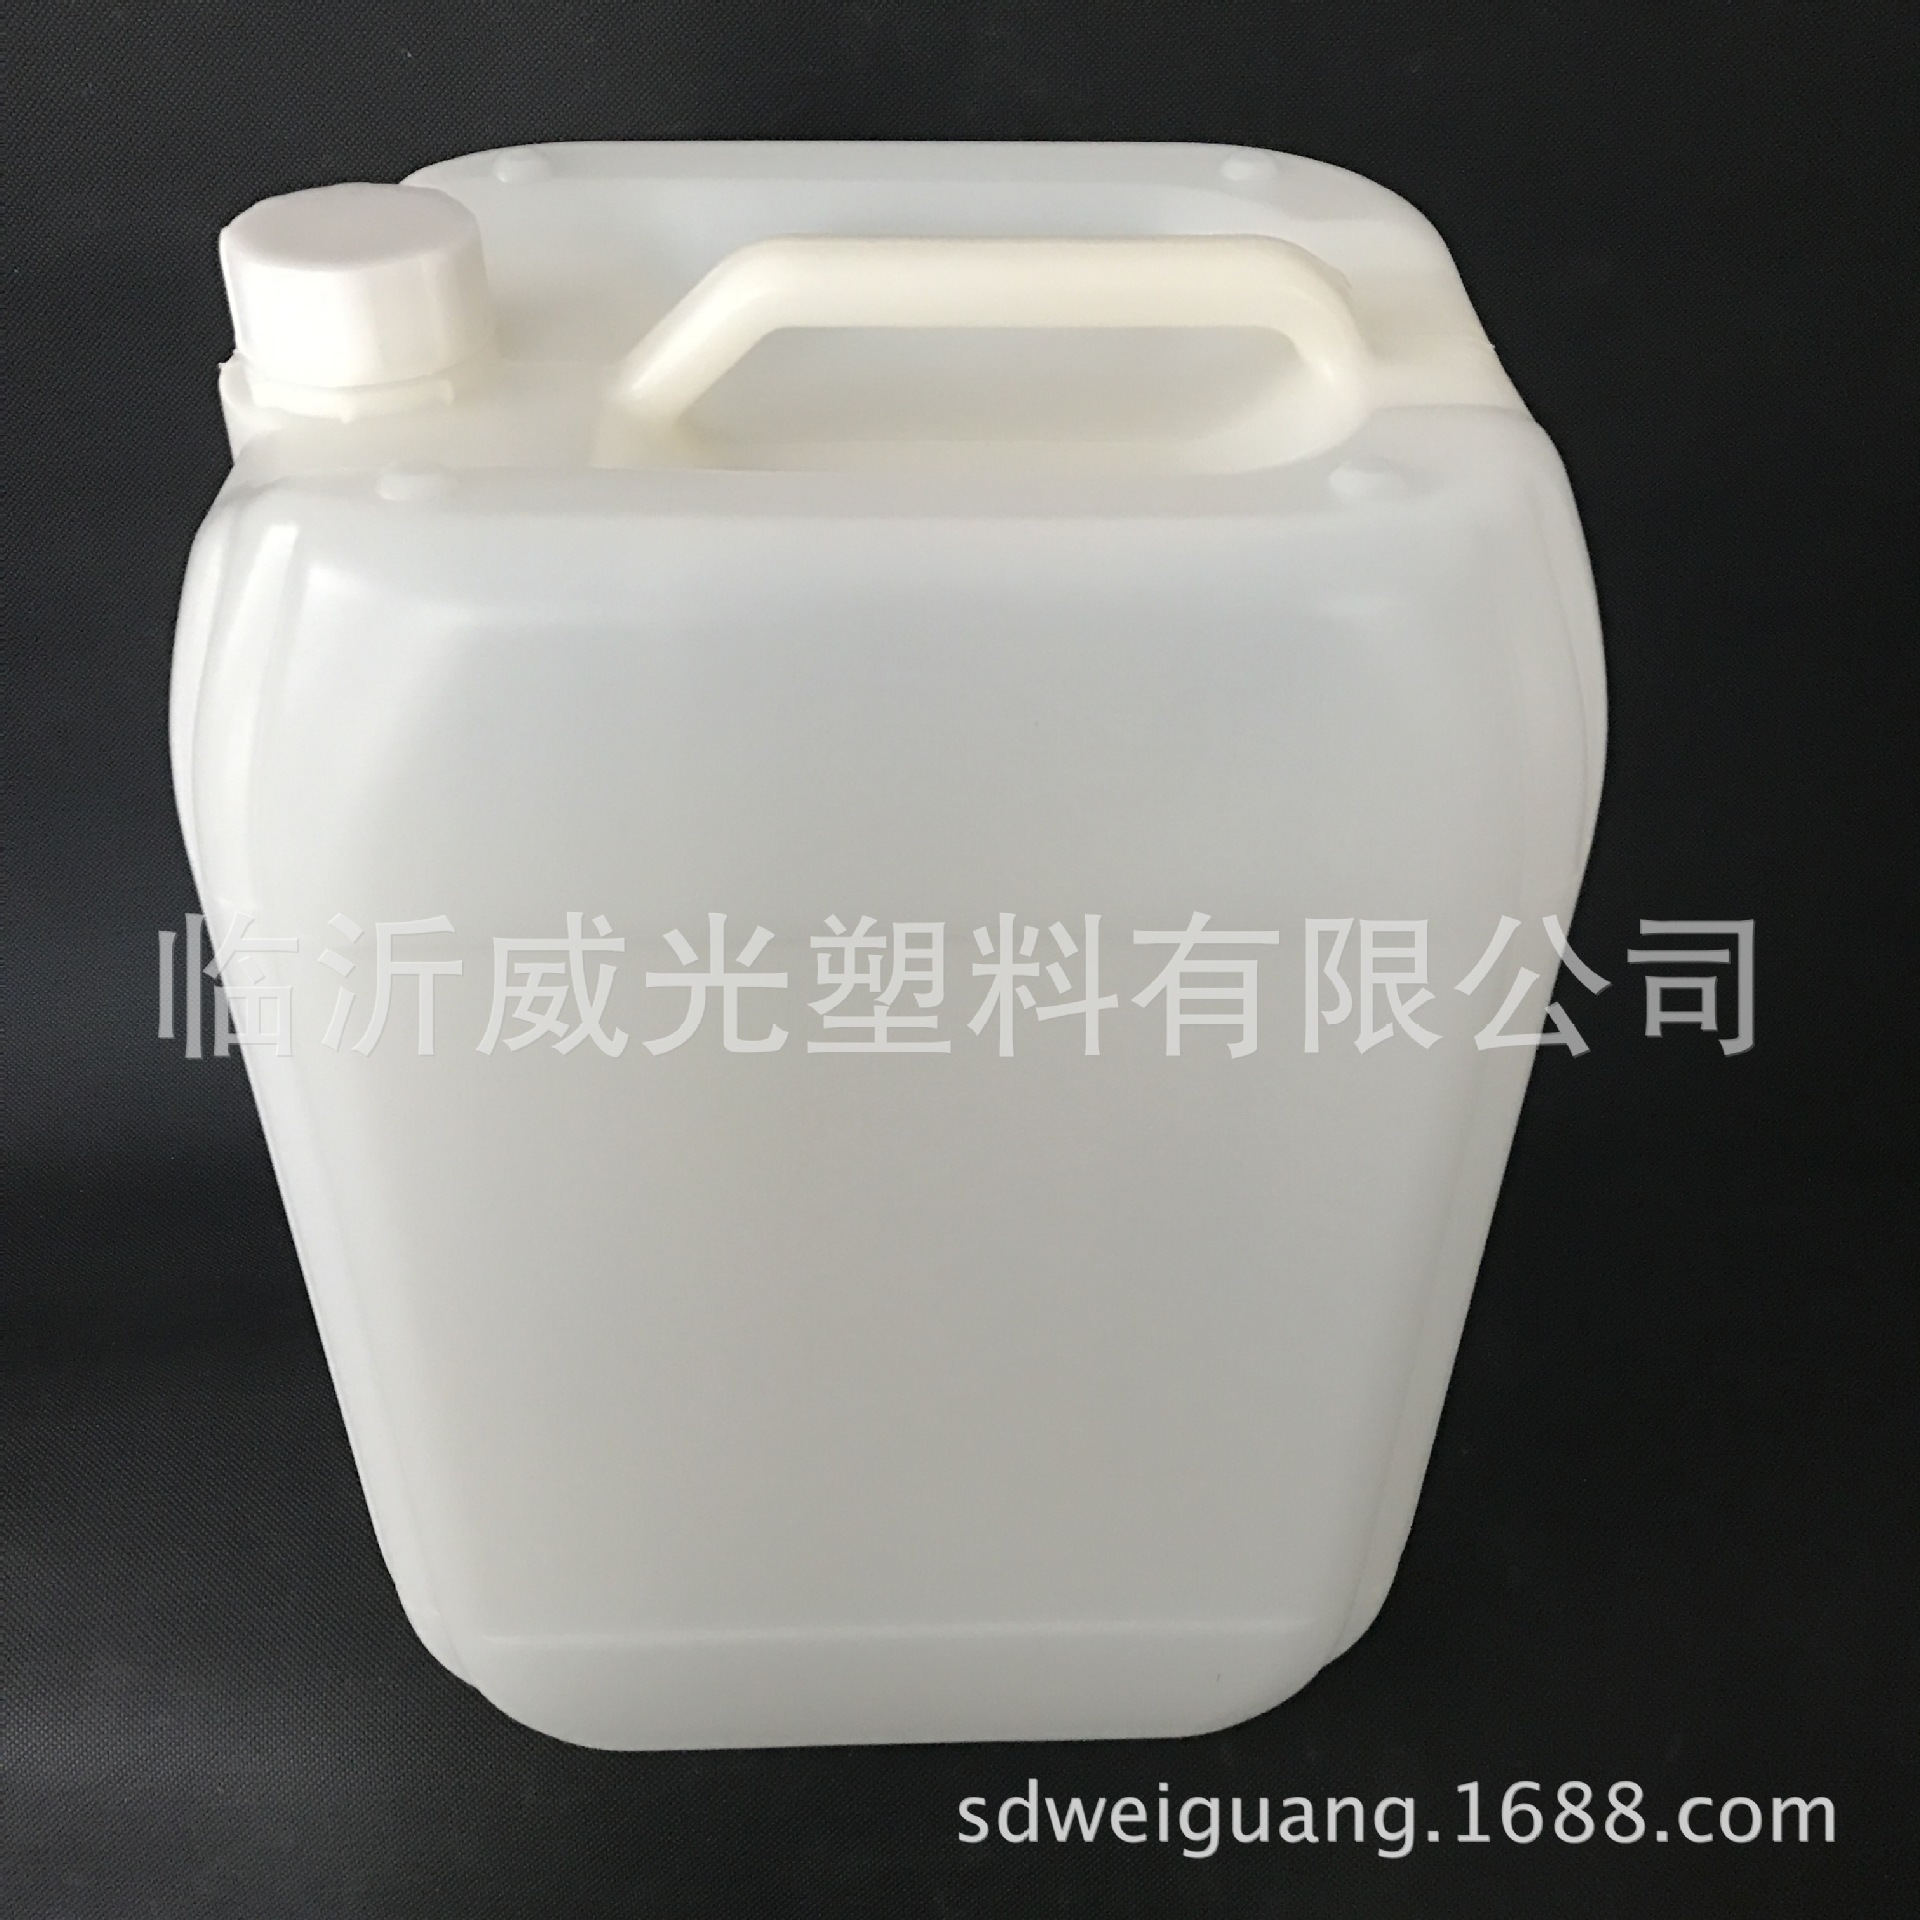 20L 车用尿素桶 尿素溶液专用包装桶 食品级塑料桶示例图4